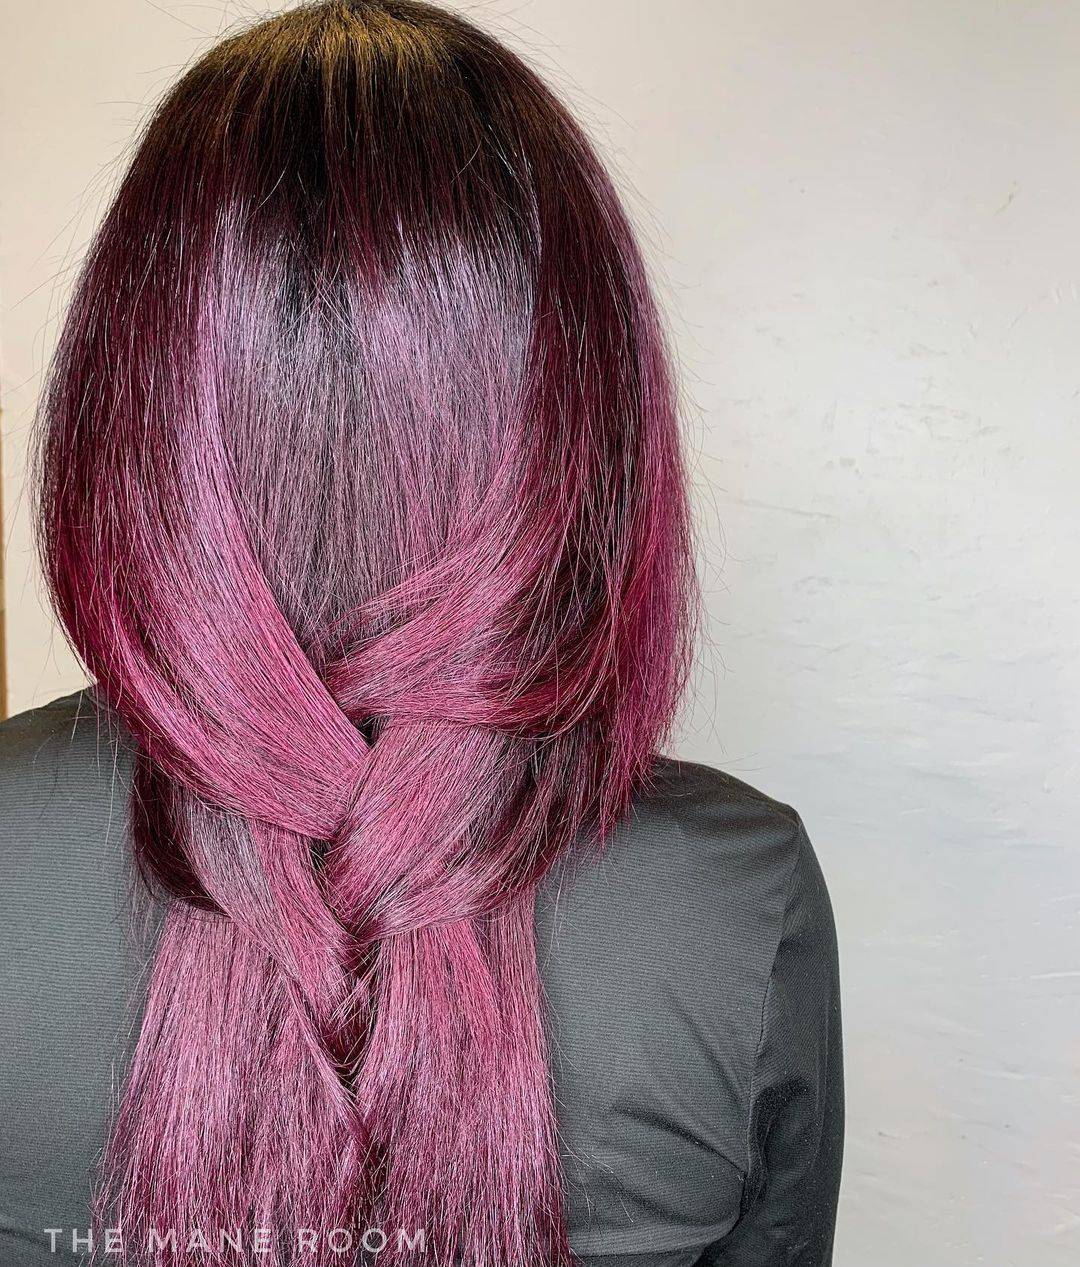 Burgundy hair color 298 burgundy hair color | burgundy hair color for women | burgundy hair color highlights Burgundy Hair Color